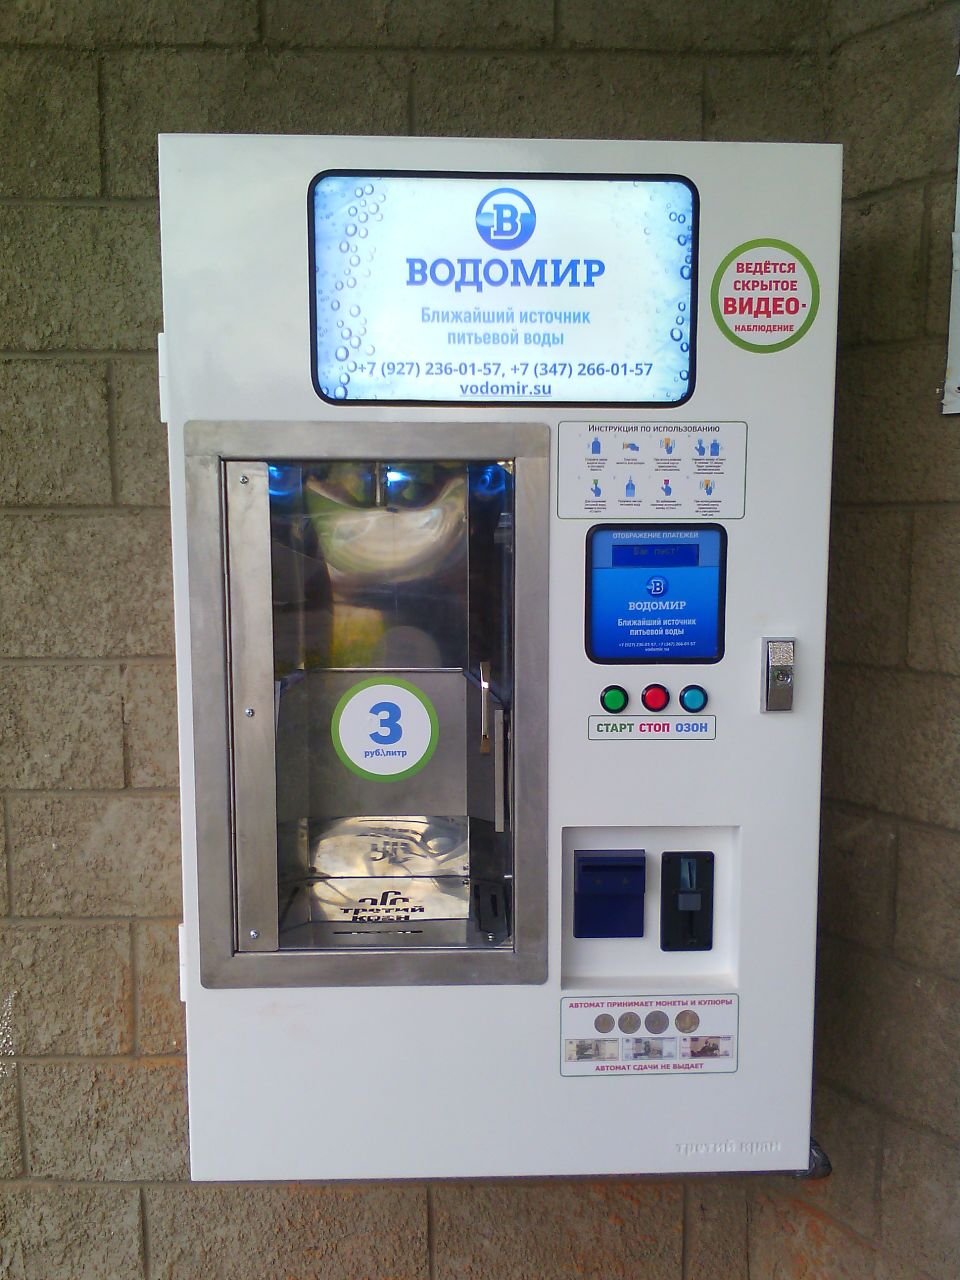 Аппарат для питьевой воды. Автомат для розлива воды. Автомат с водой. Аппарат питьевой воды. Вода на розлив автомат уличный.